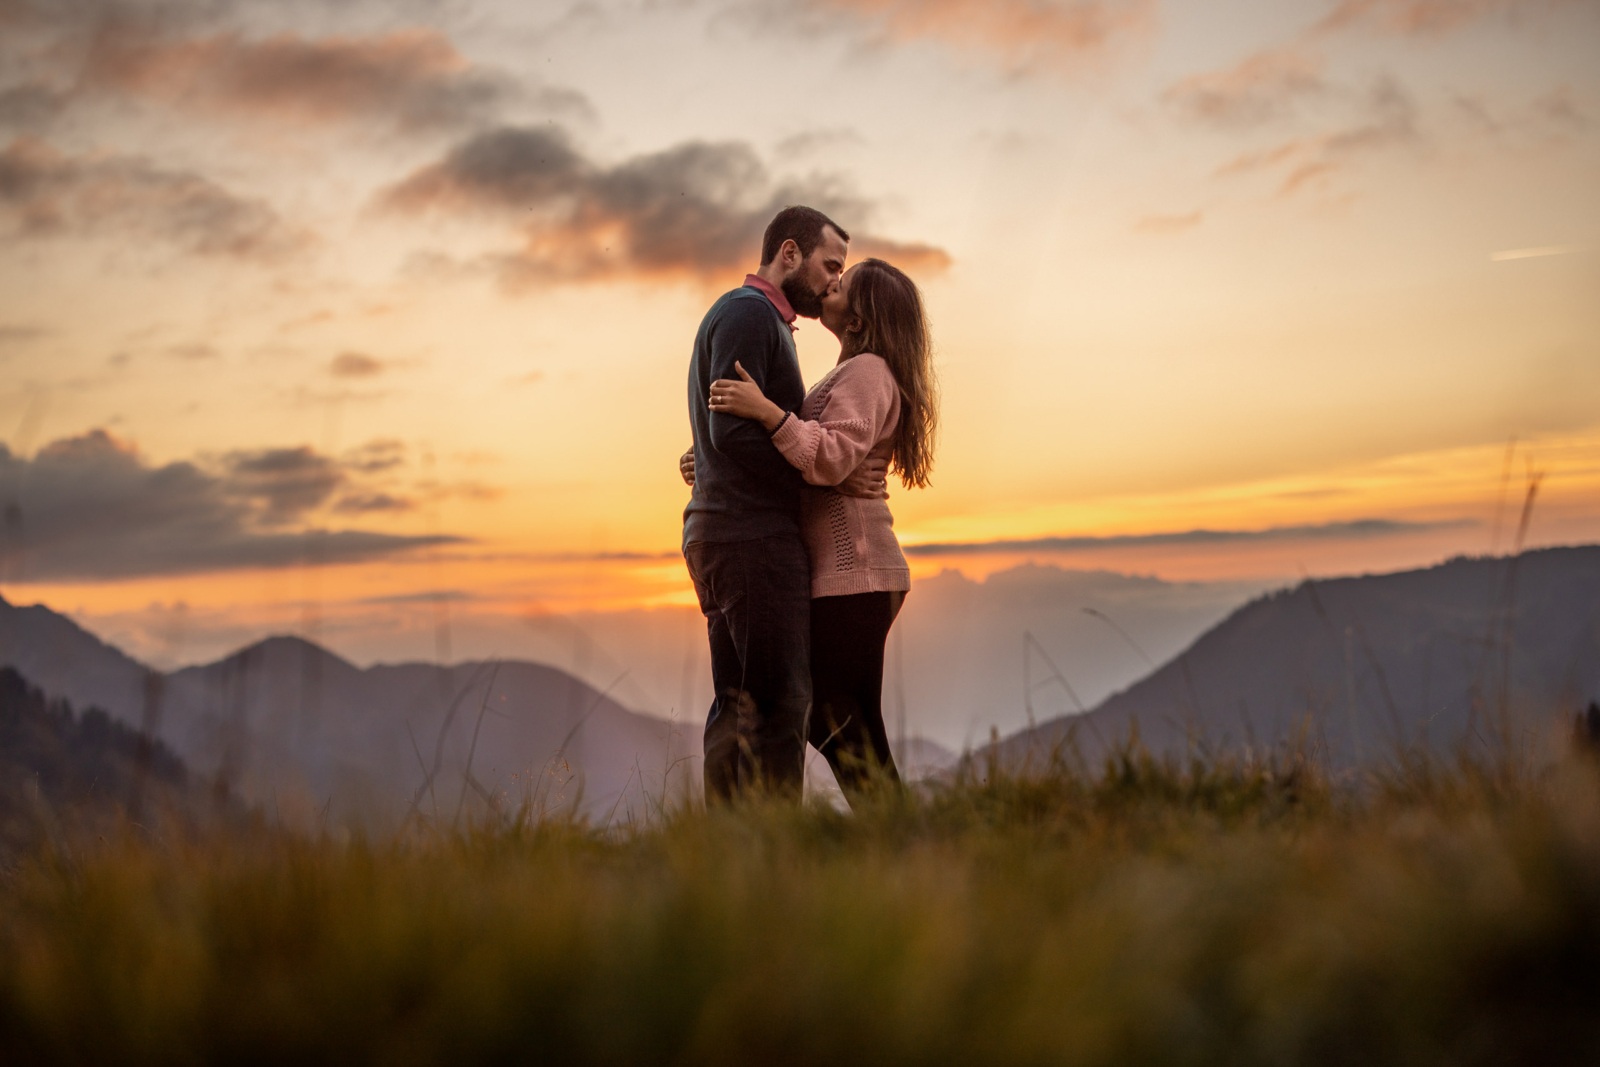 romantic sunset engagement photos in Austria